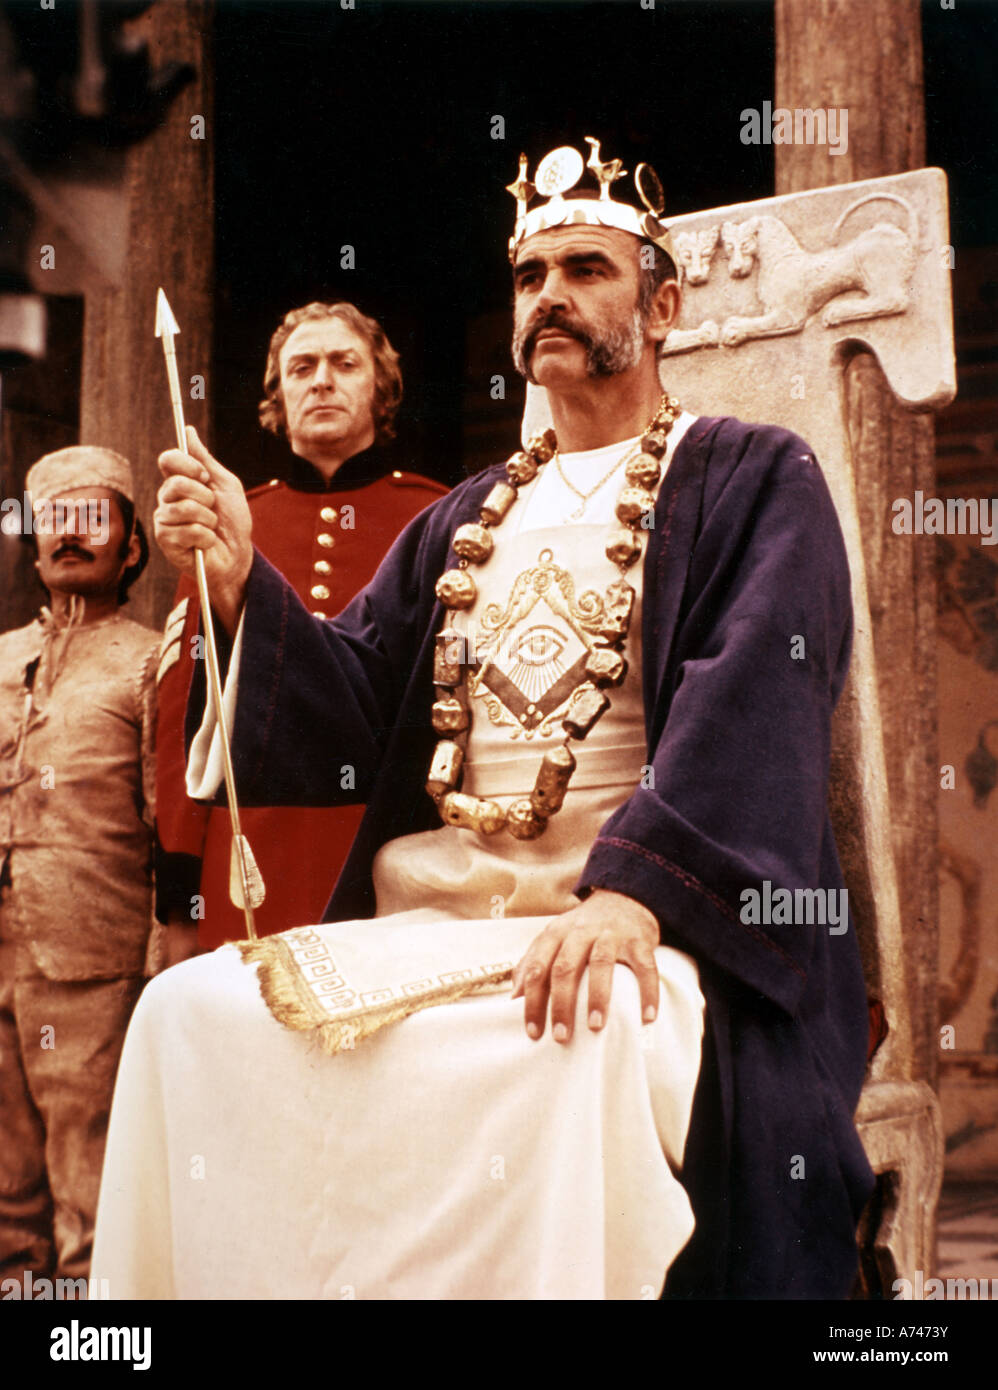 Uomo che sarebbe stato re 1975 Columbia/Allied Artists film con Sean Connery seduto e Michael Caine in uniforme Foto Stock